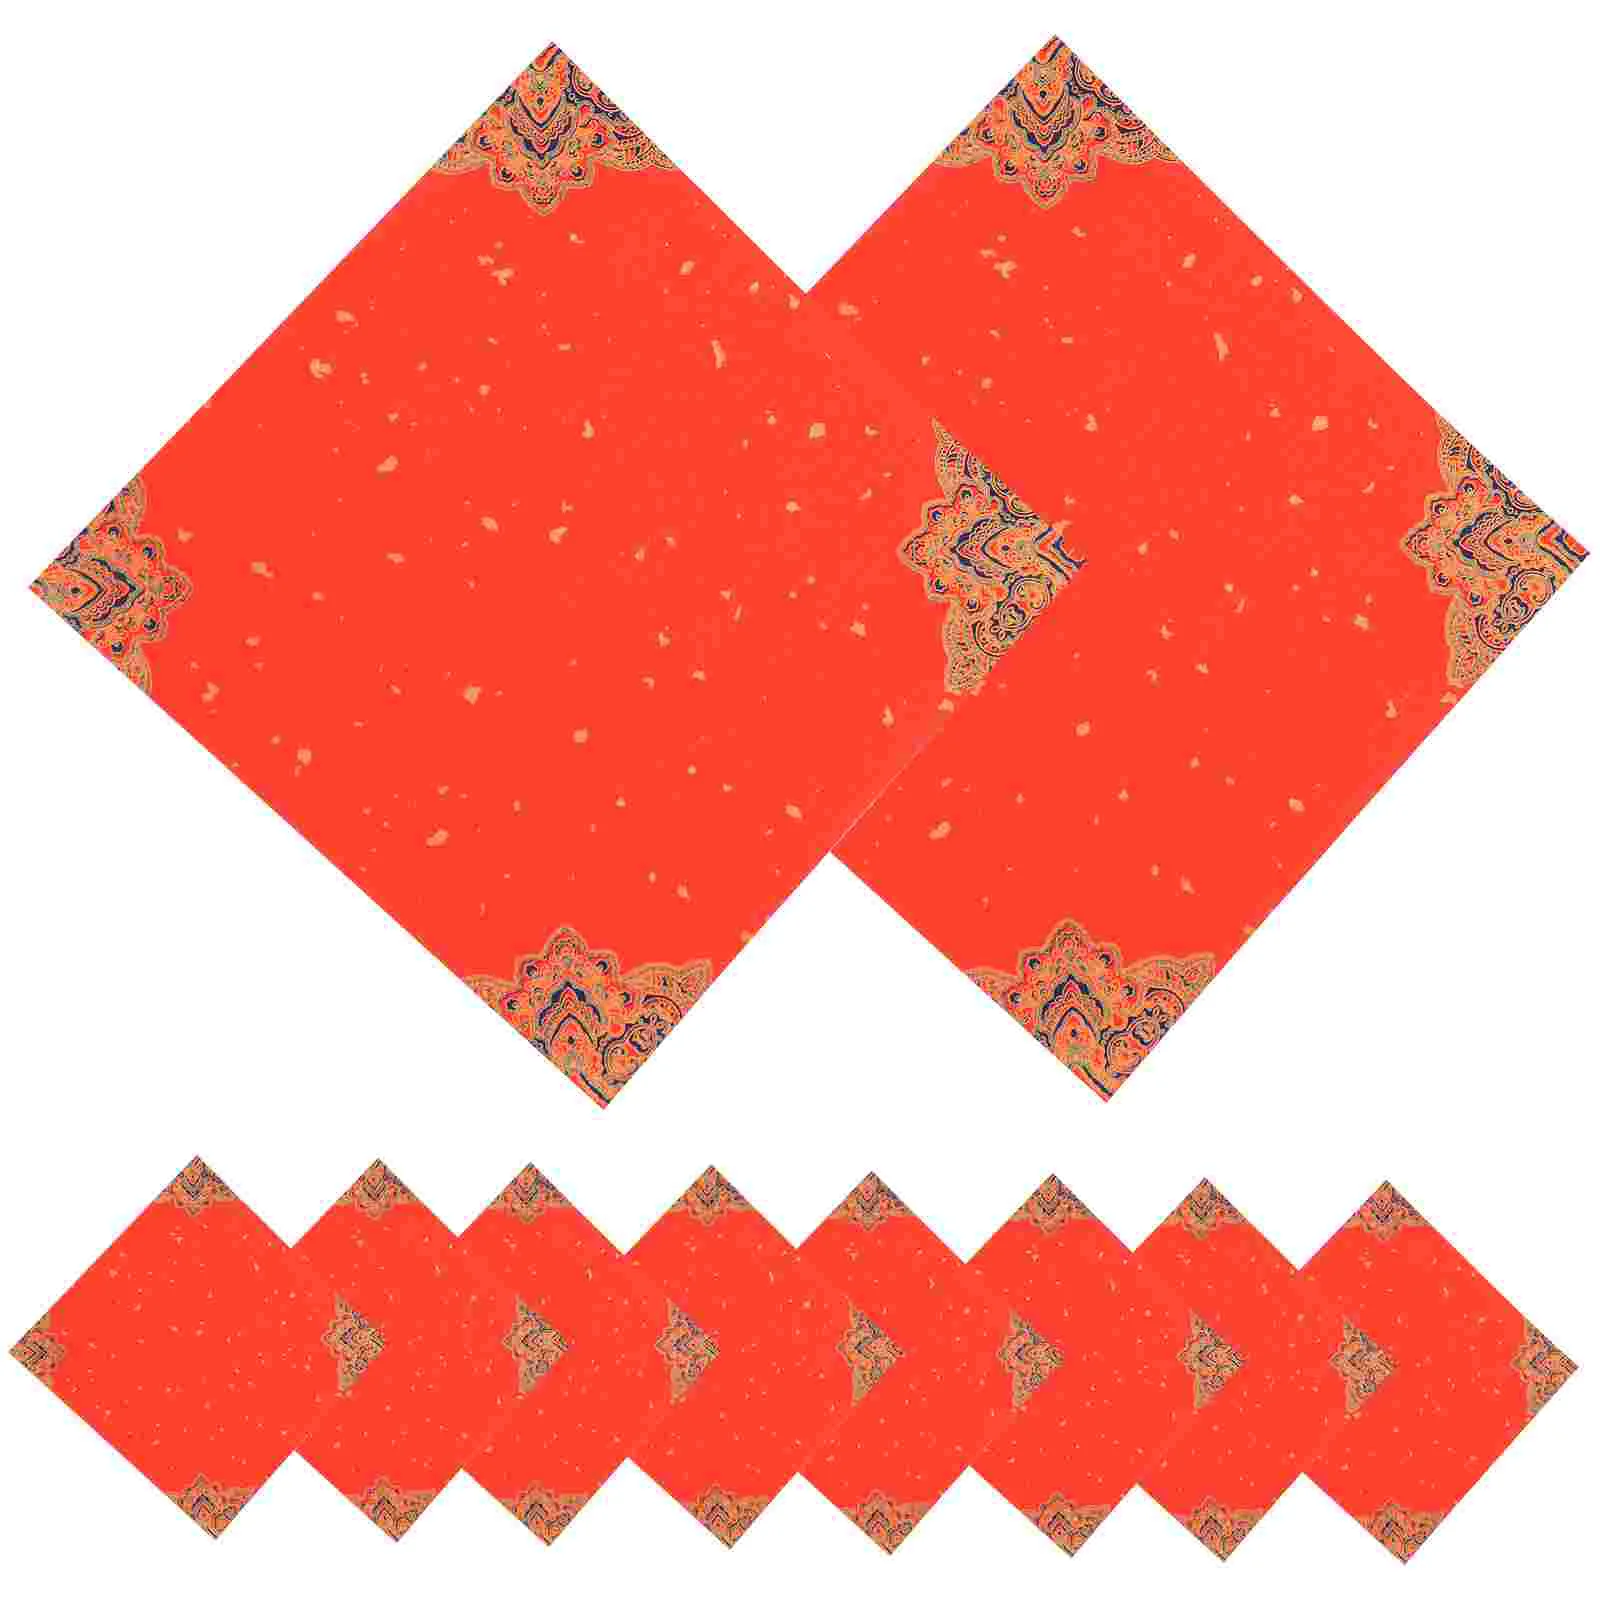 

Рисовая бумага Xuan, китайская фотобумага, красная бумага для рисования, фотобумага для китайского Нового года, искусственная каллиграфия